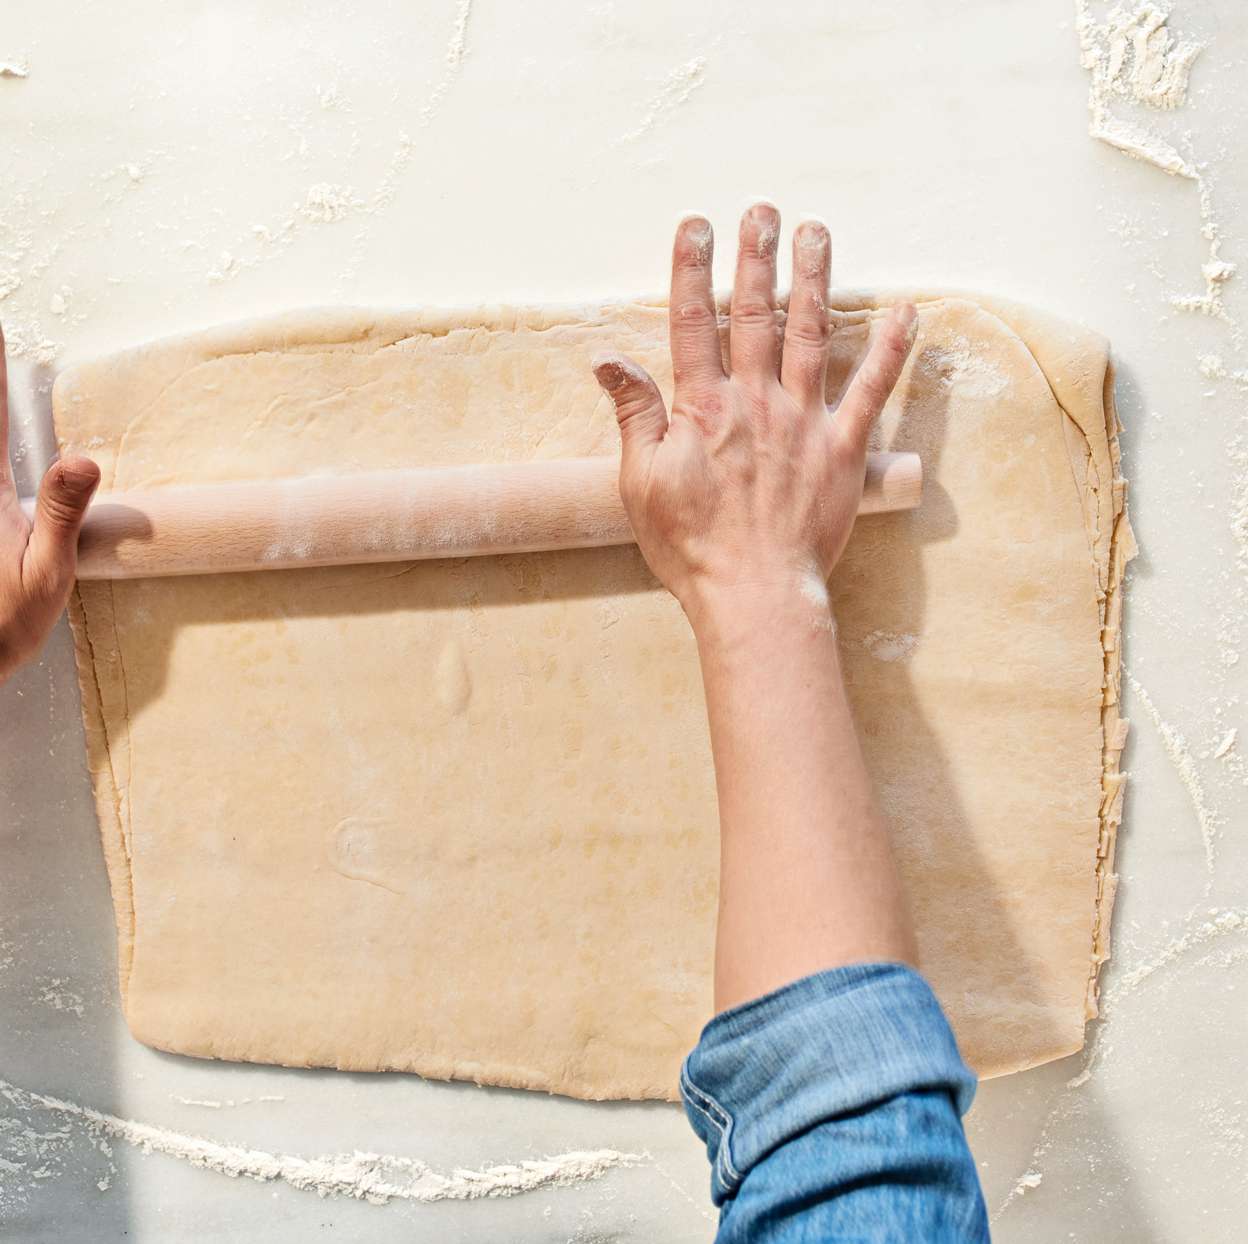 rolling out croissant dough